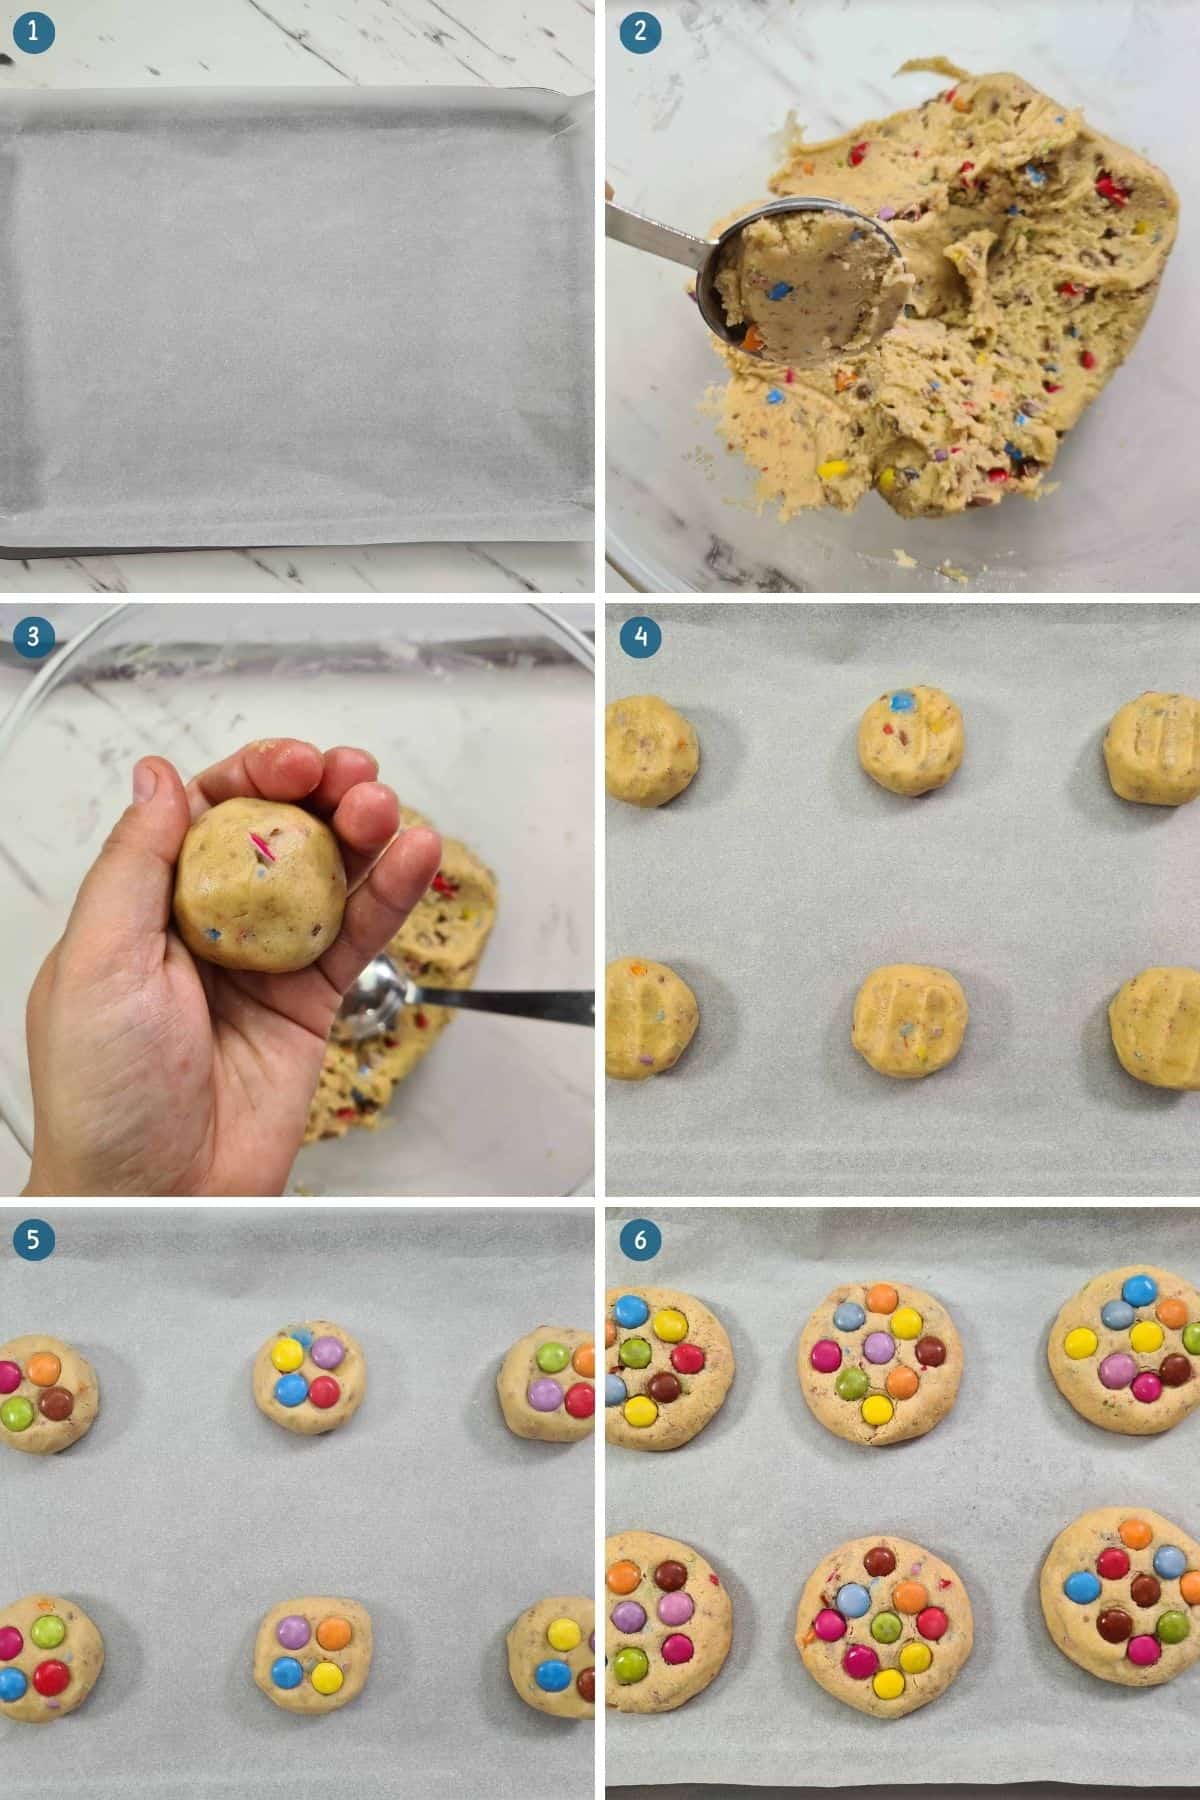 baking-the-smarties-cookies-recipe